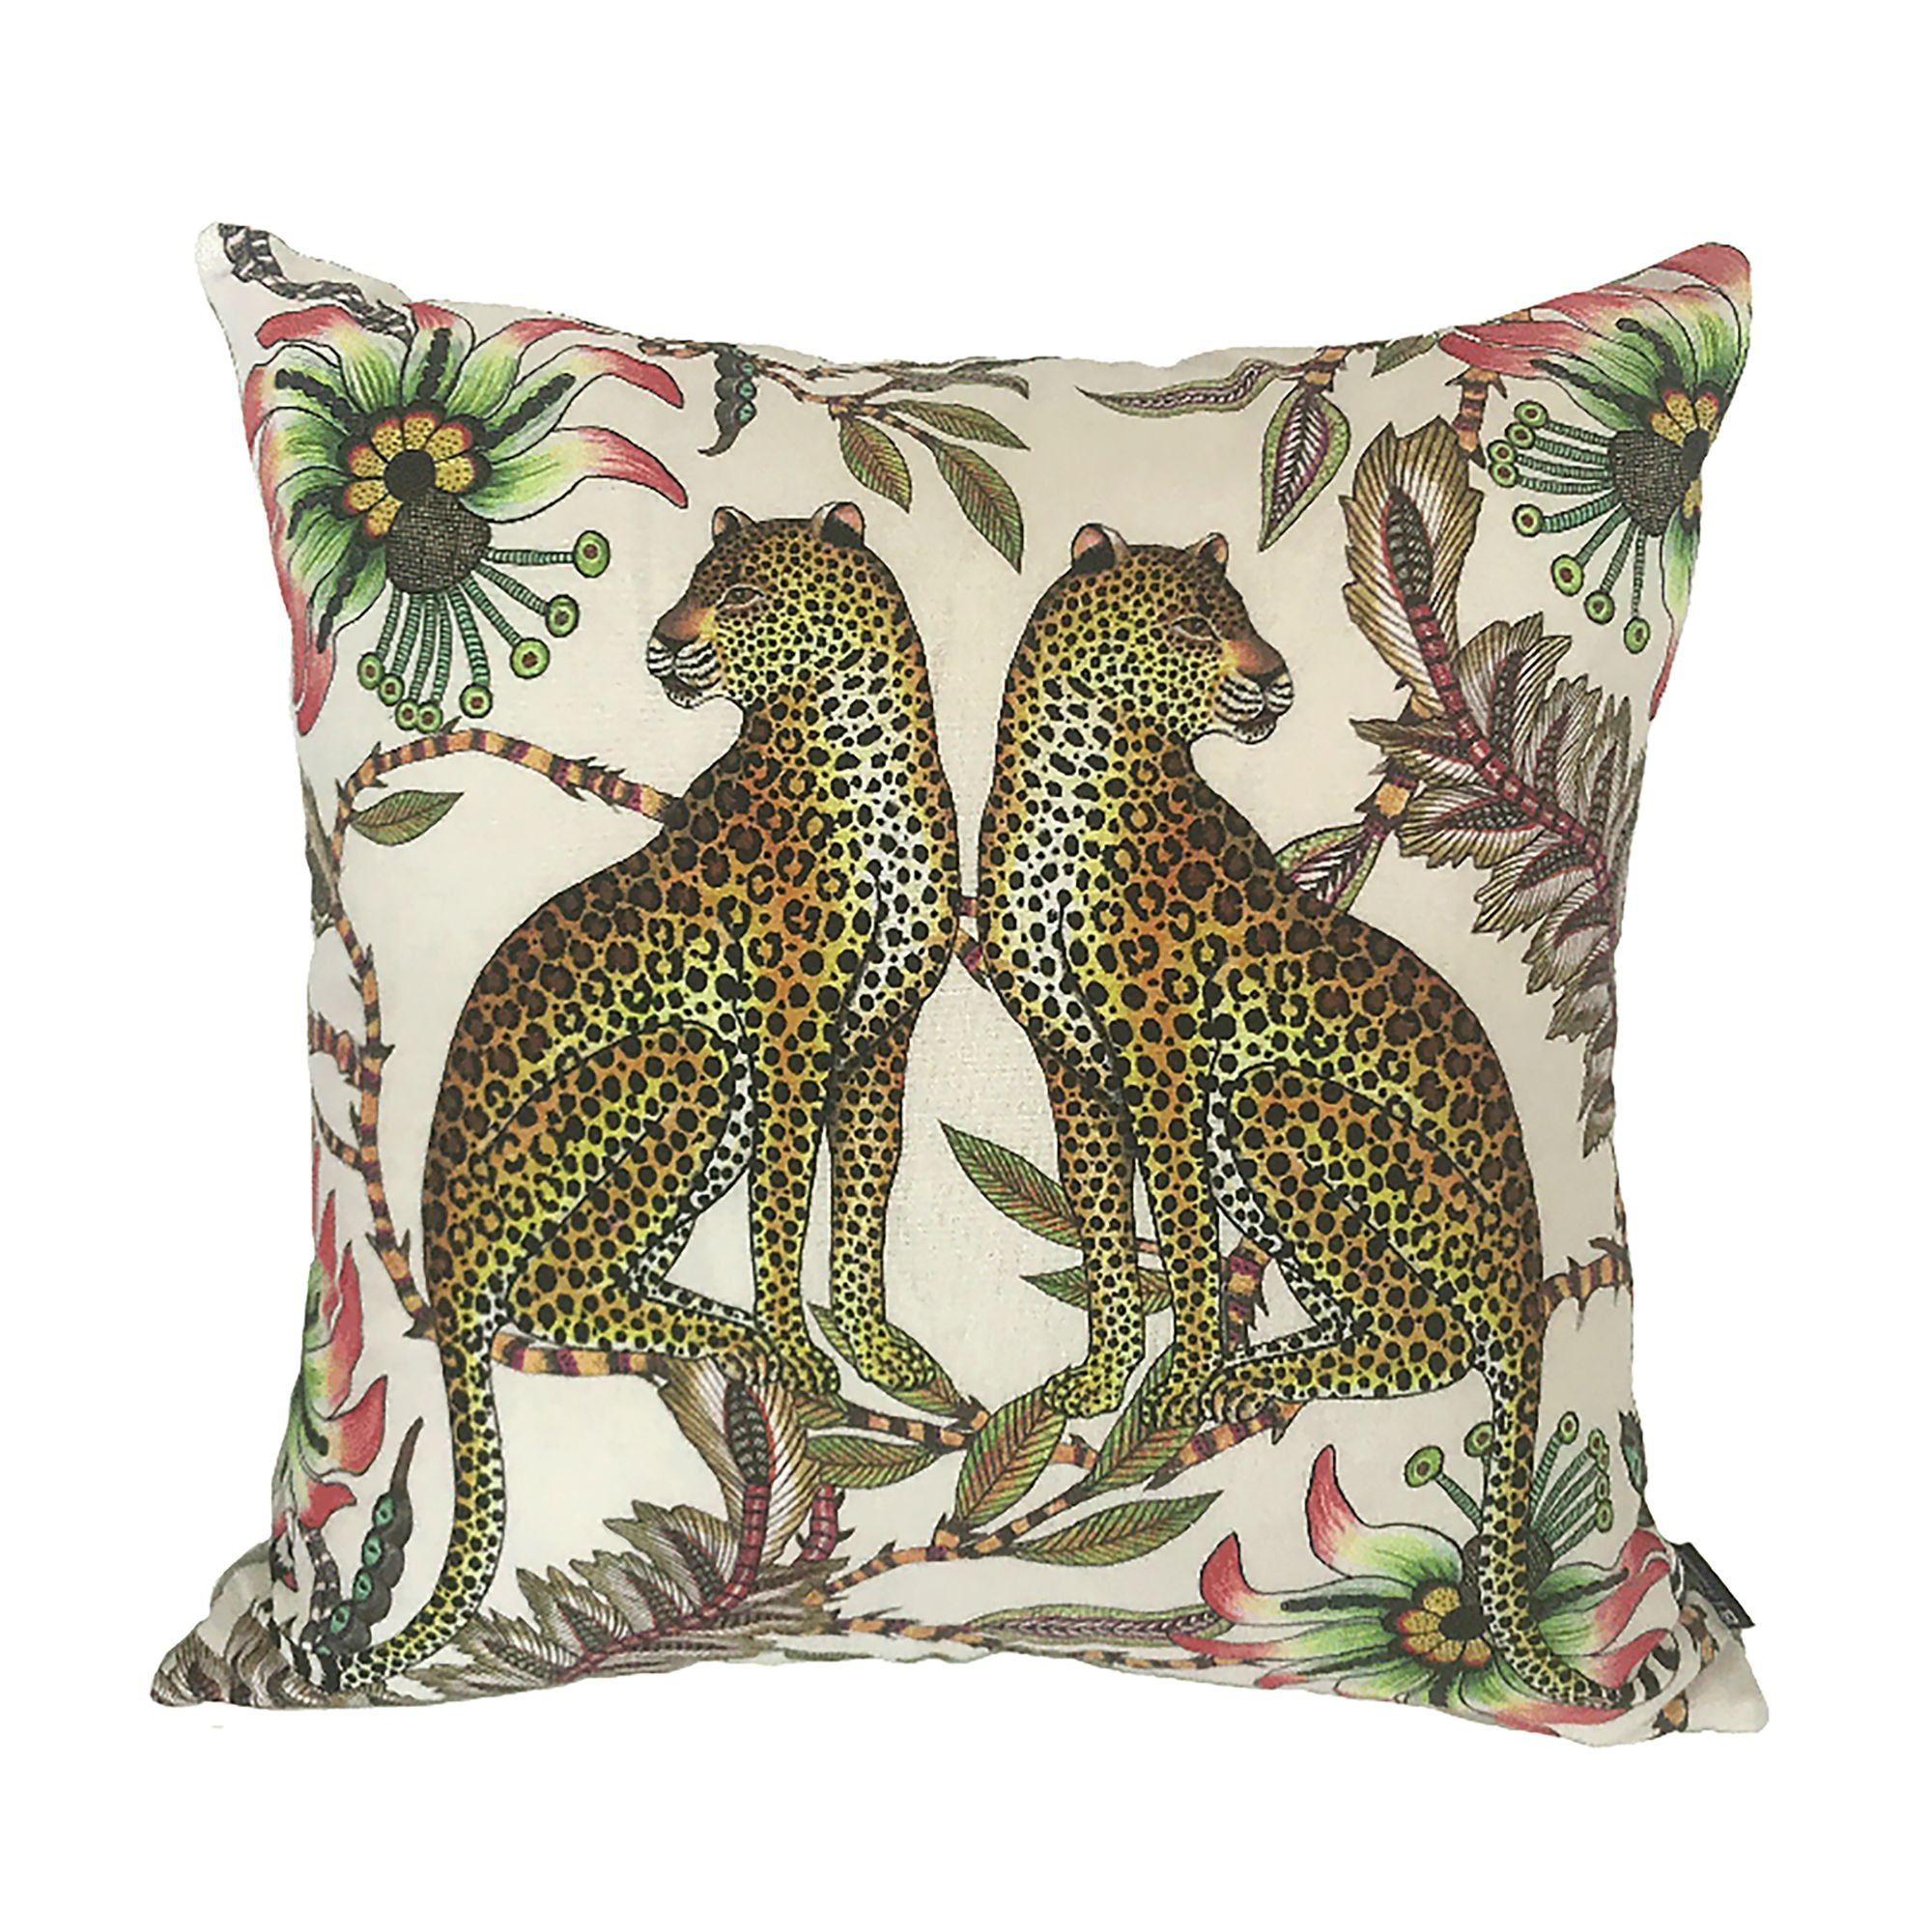 Lovebird Leopards Pillow - Cotton - Parakeet